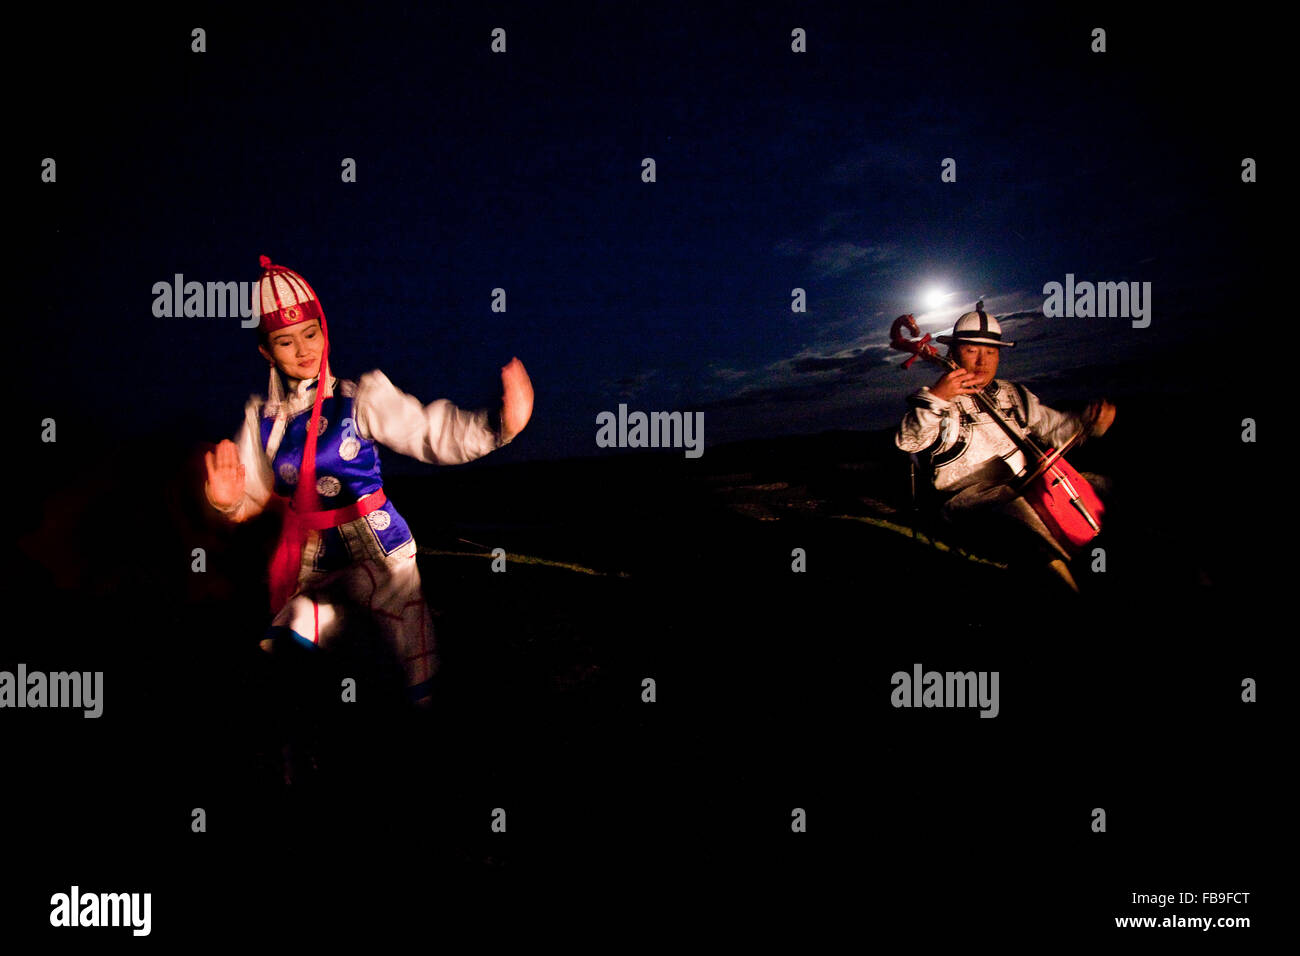 Le chant de gorge, flûte, violon et de la danse des cheveux de cheval transmettre les rythmes de chevaux et de la vie dans les steppes de Mongolie, de lune. Banque D'Images